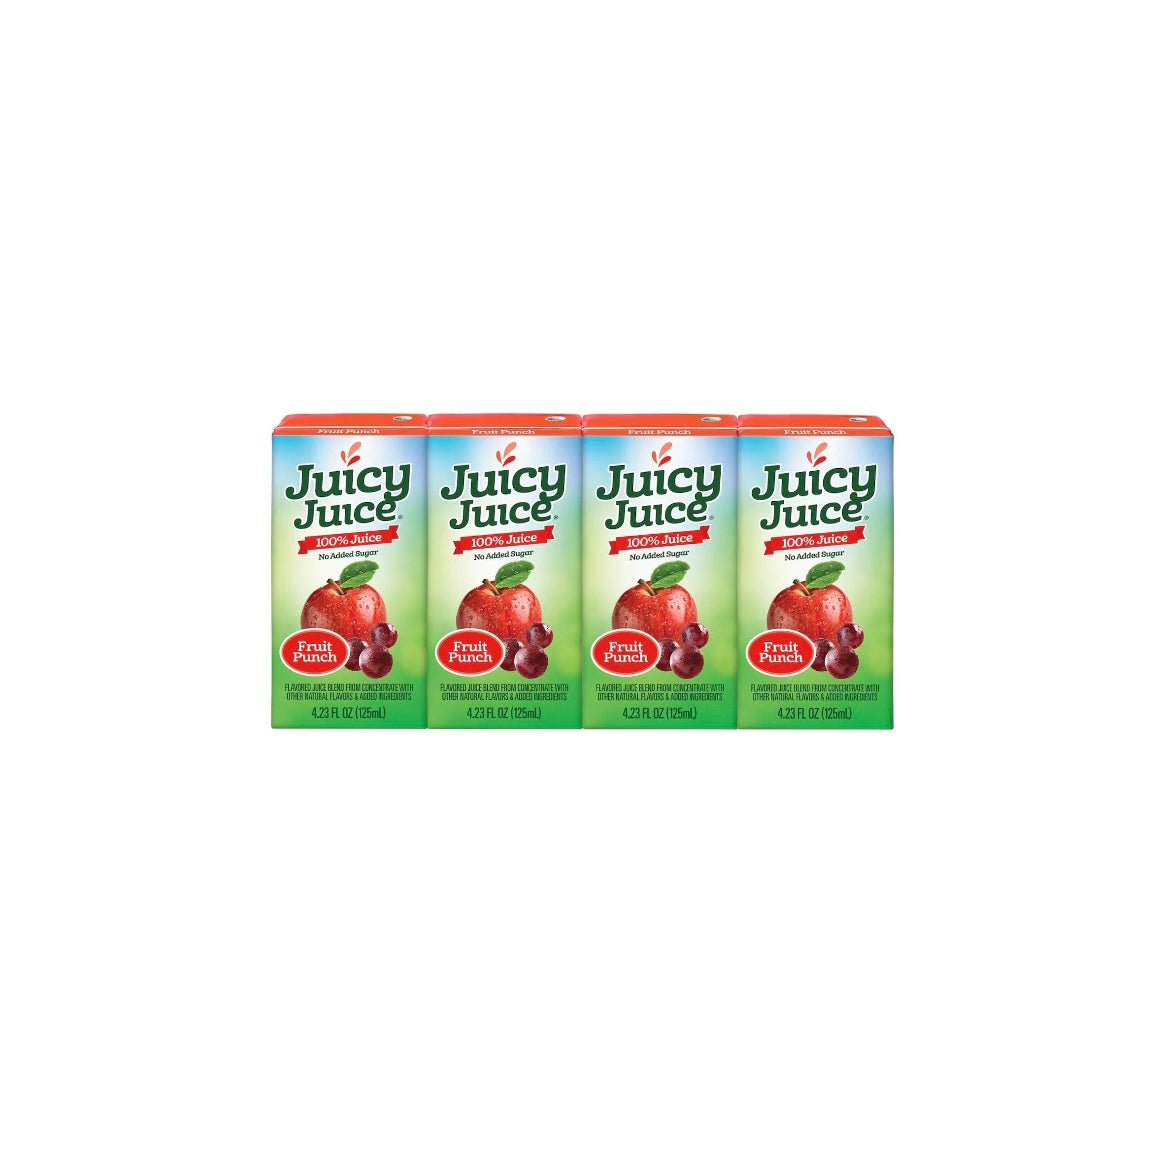 Juicy Juice Fruit Punch Boxes 4 count (220899)